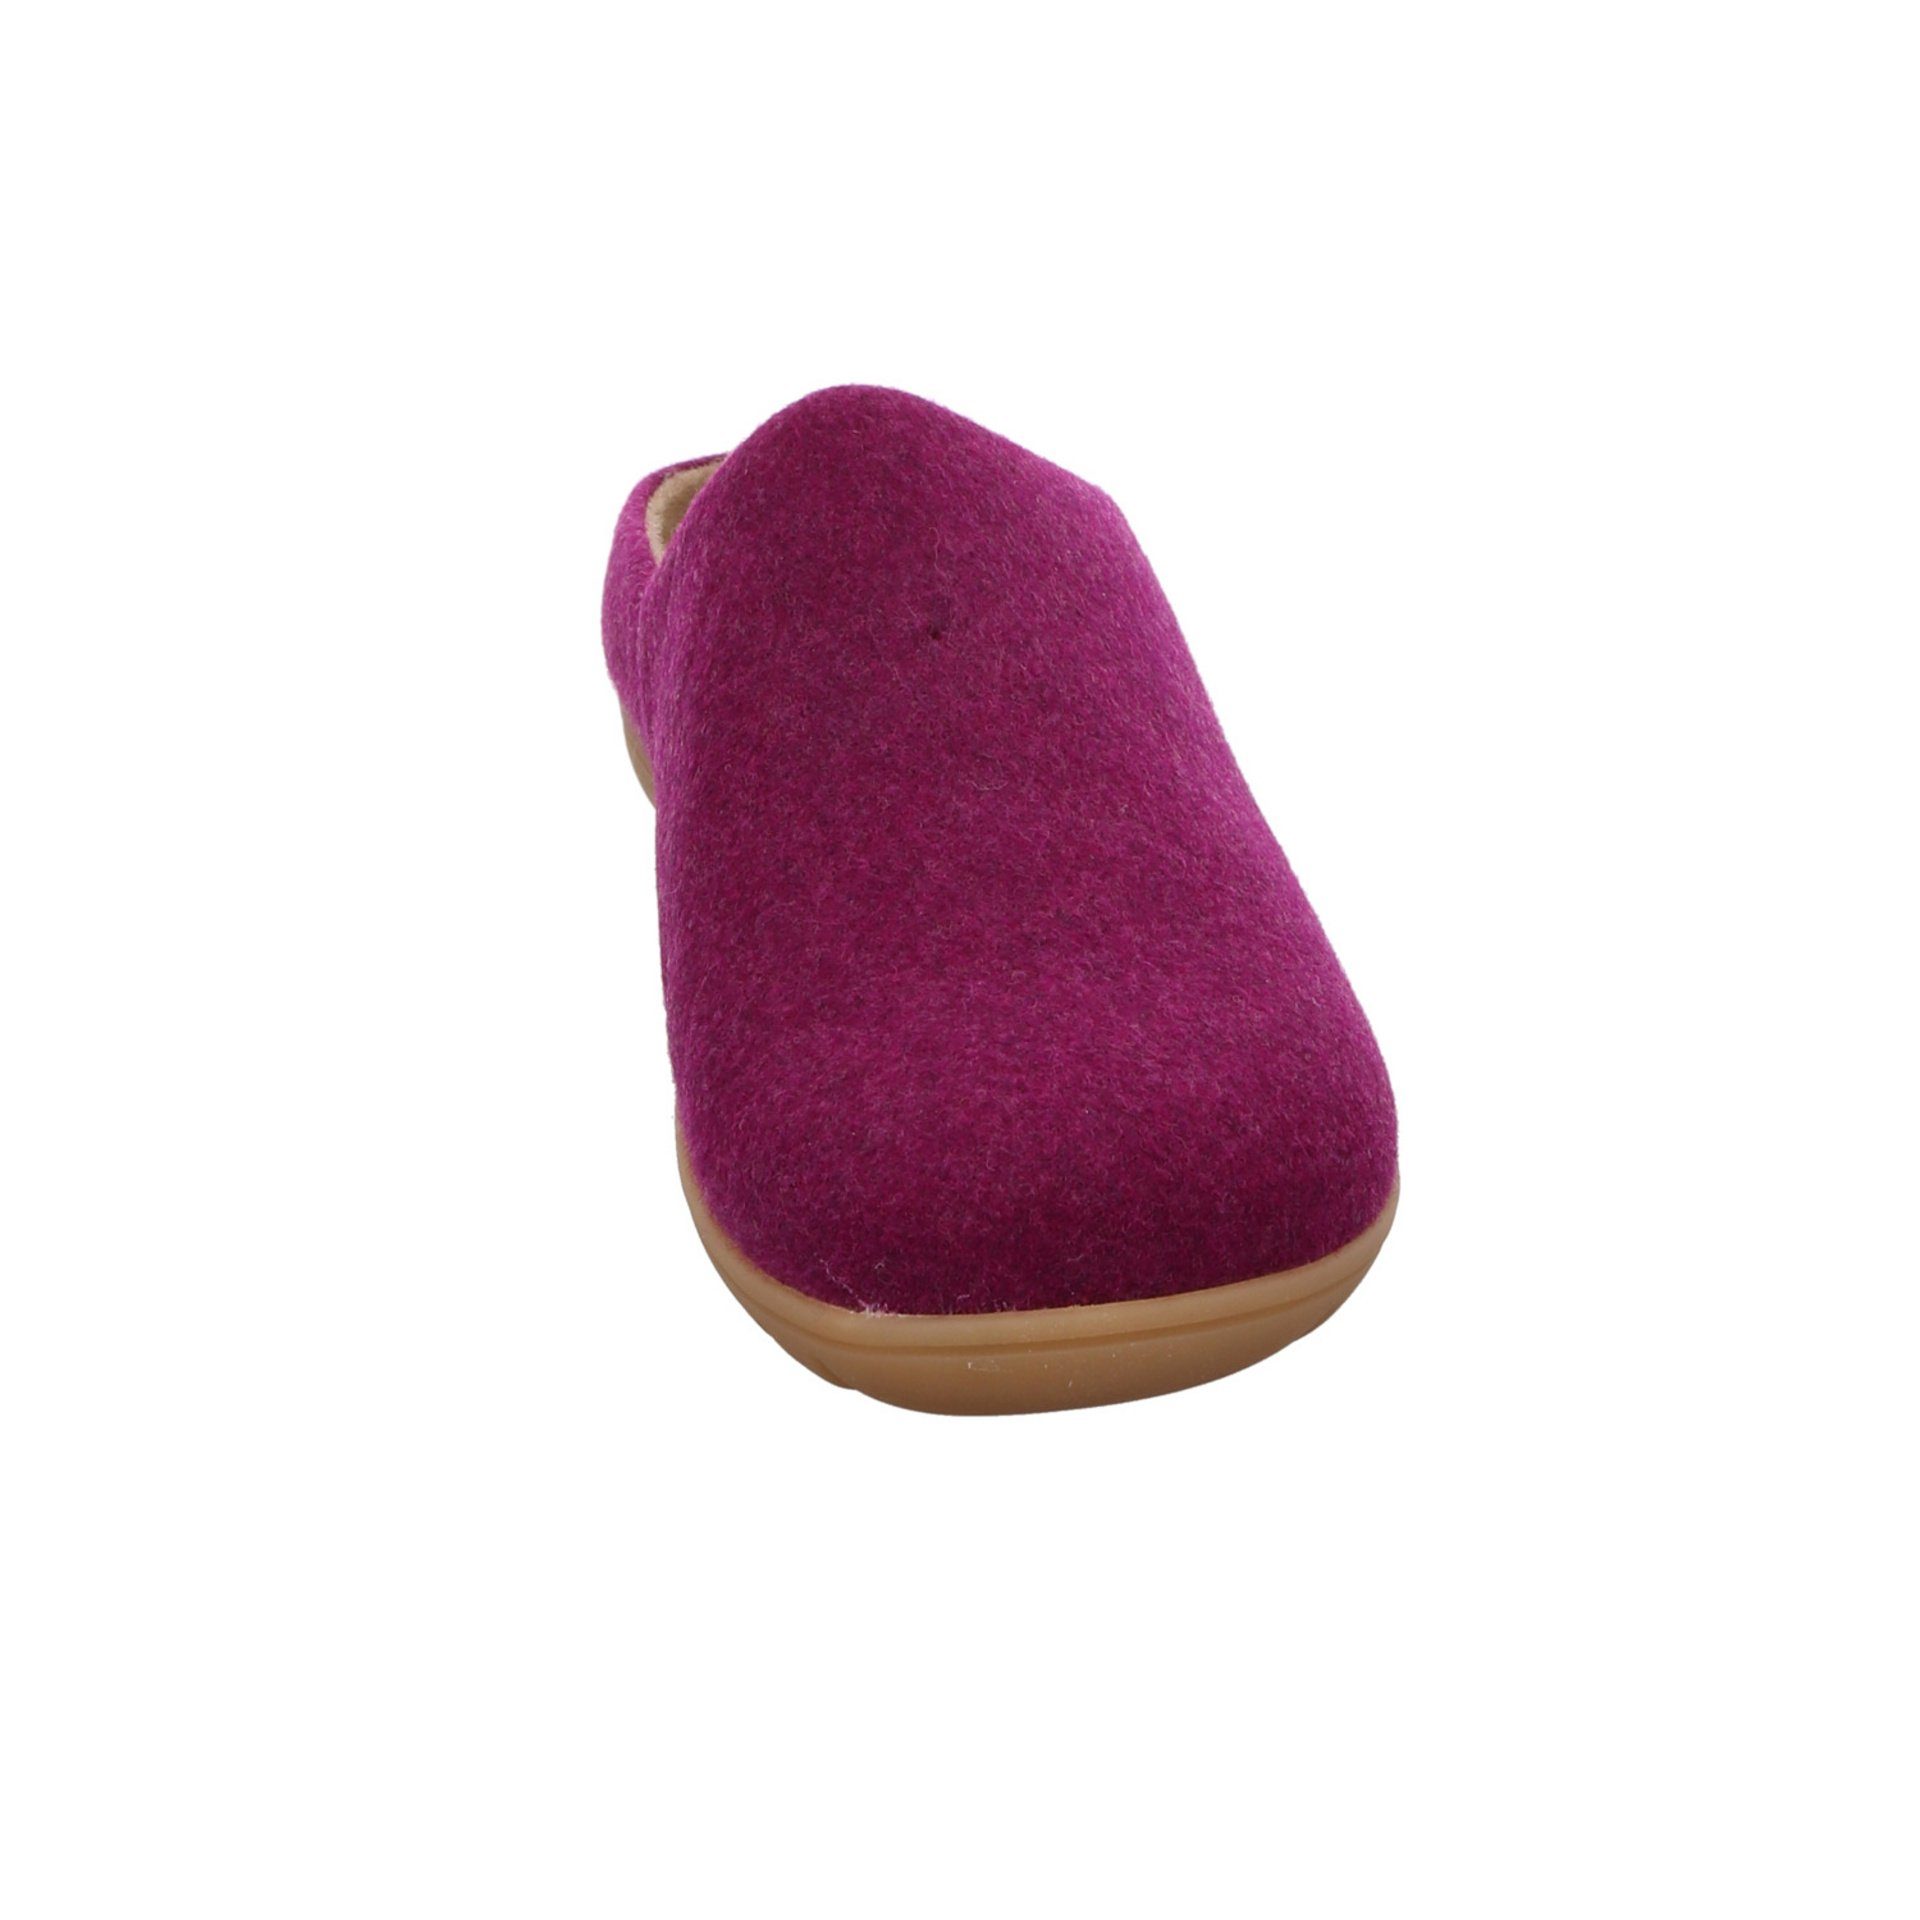 Hausschuhe Hausschuh Westland Cadiz Damen purple Textil Hausschuh 01 Slipper